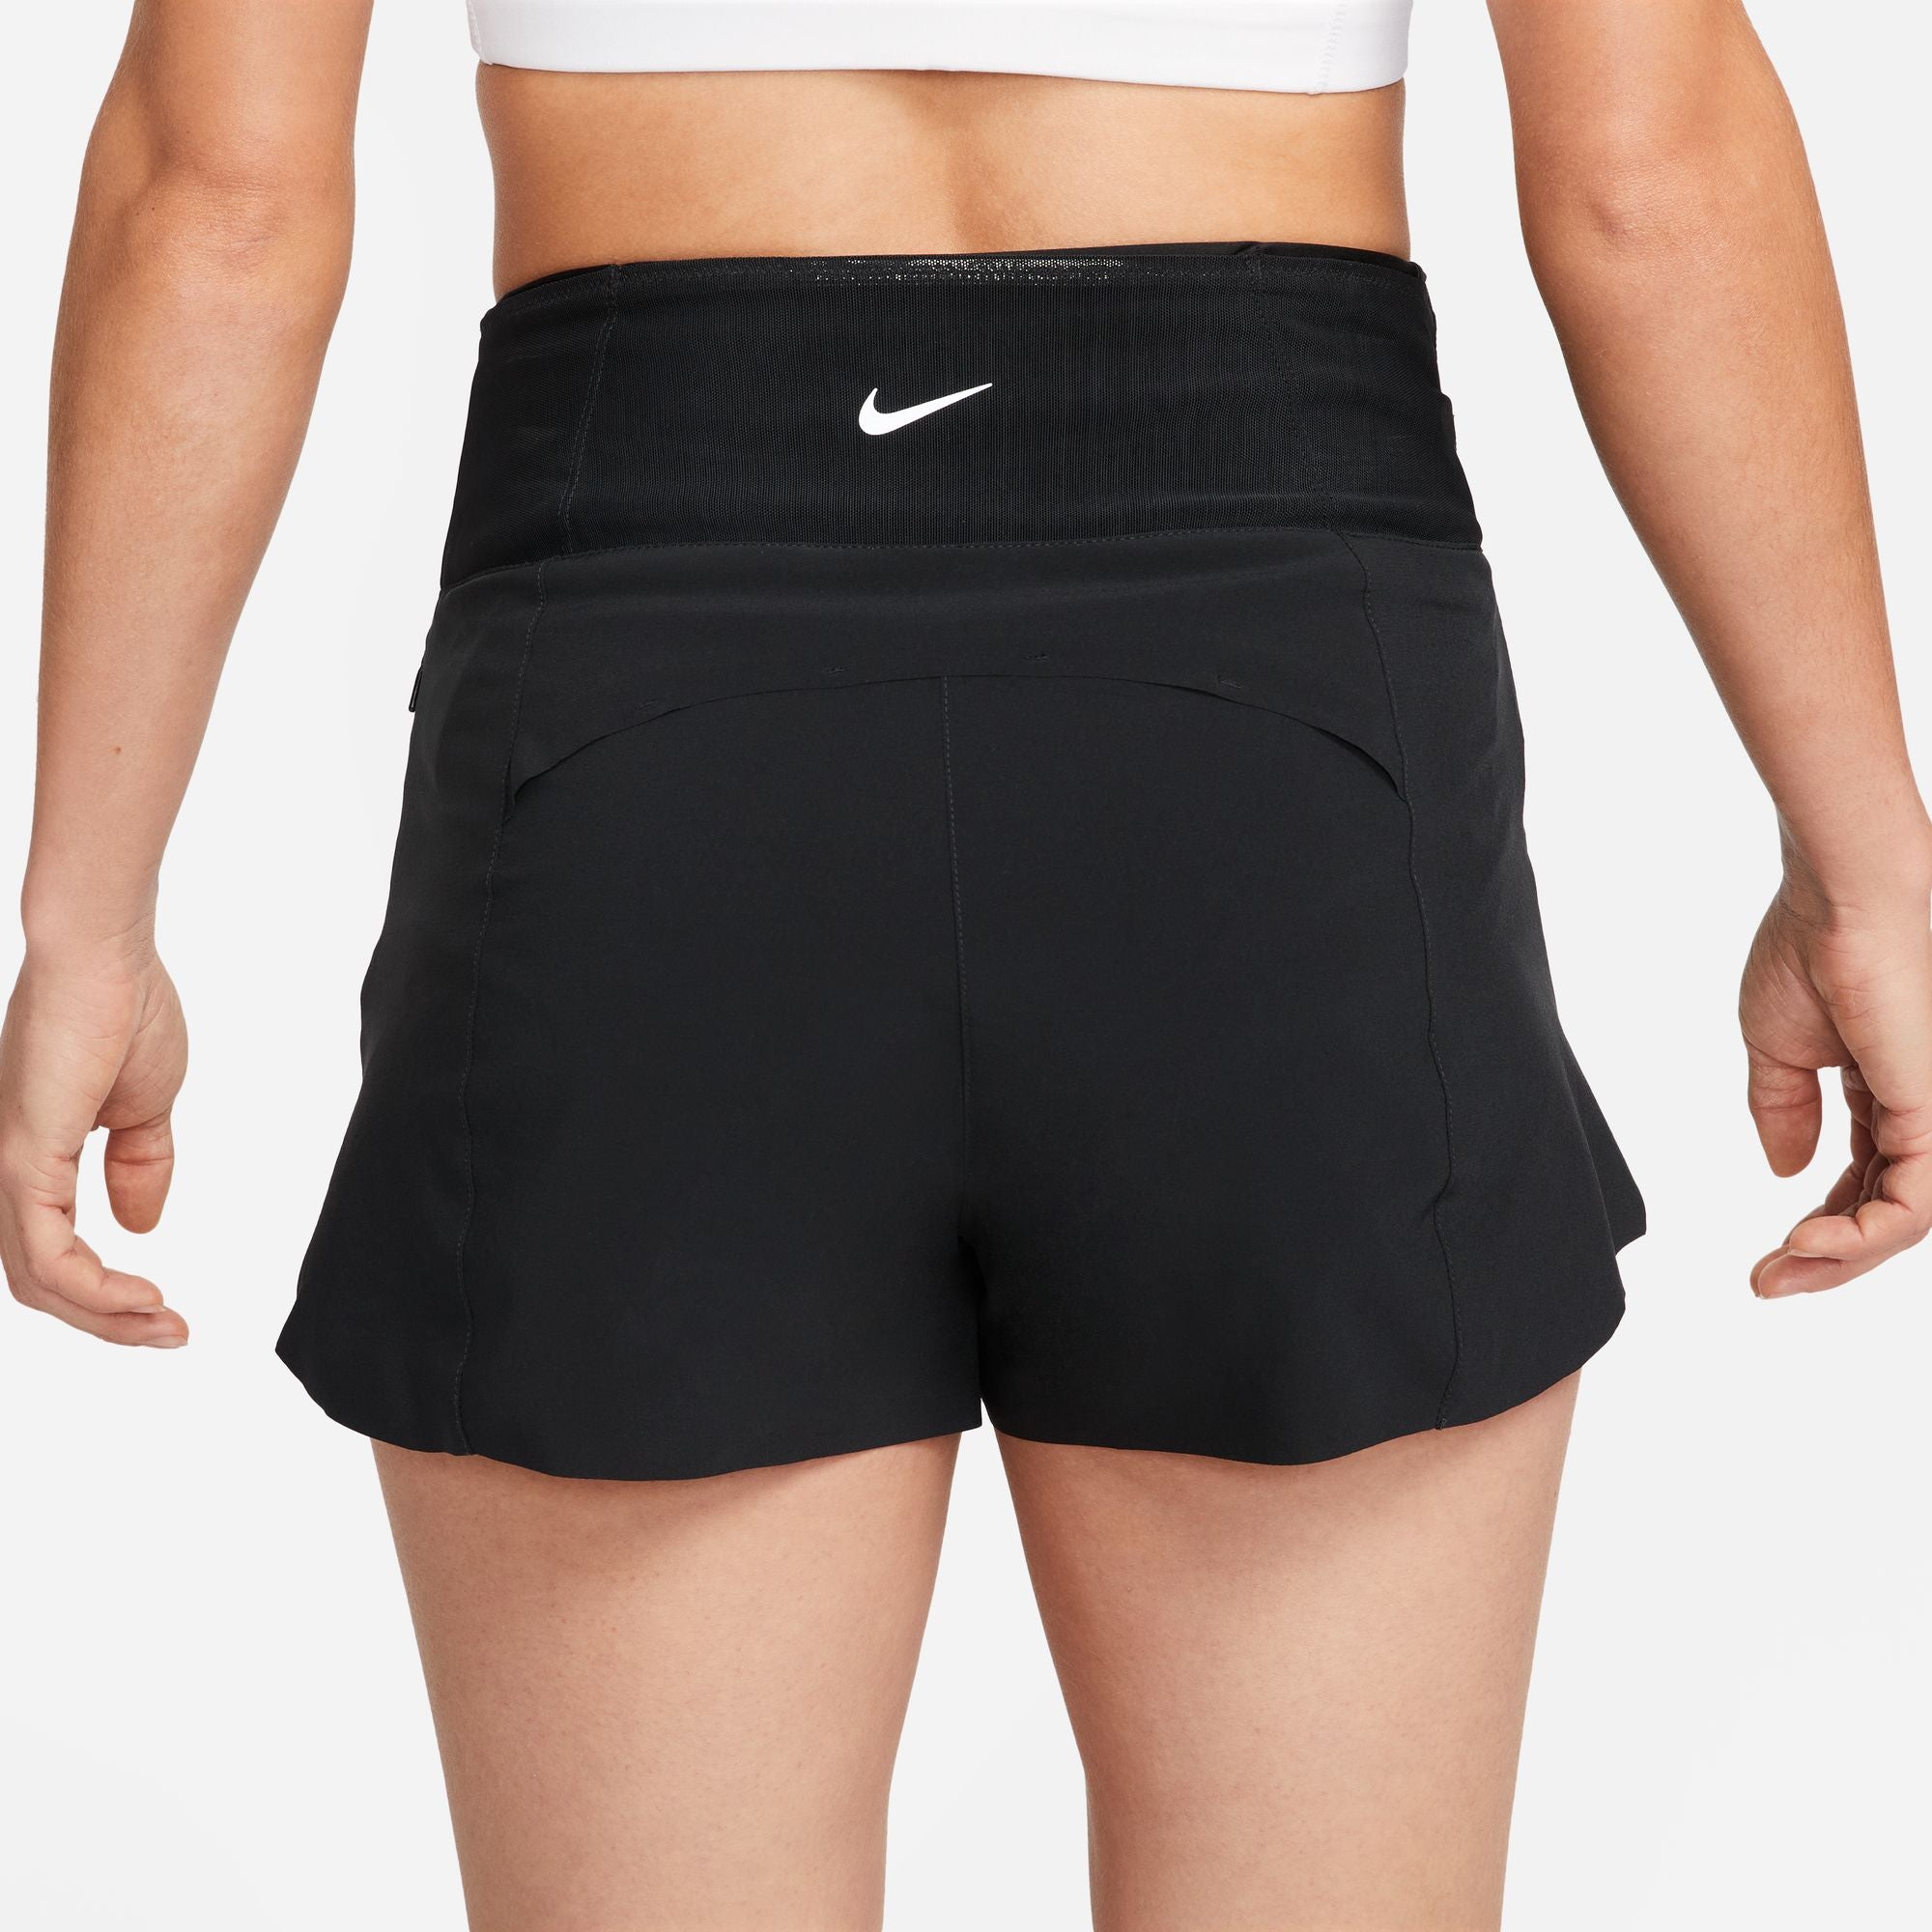 Nike Women's Dry Running Shorts